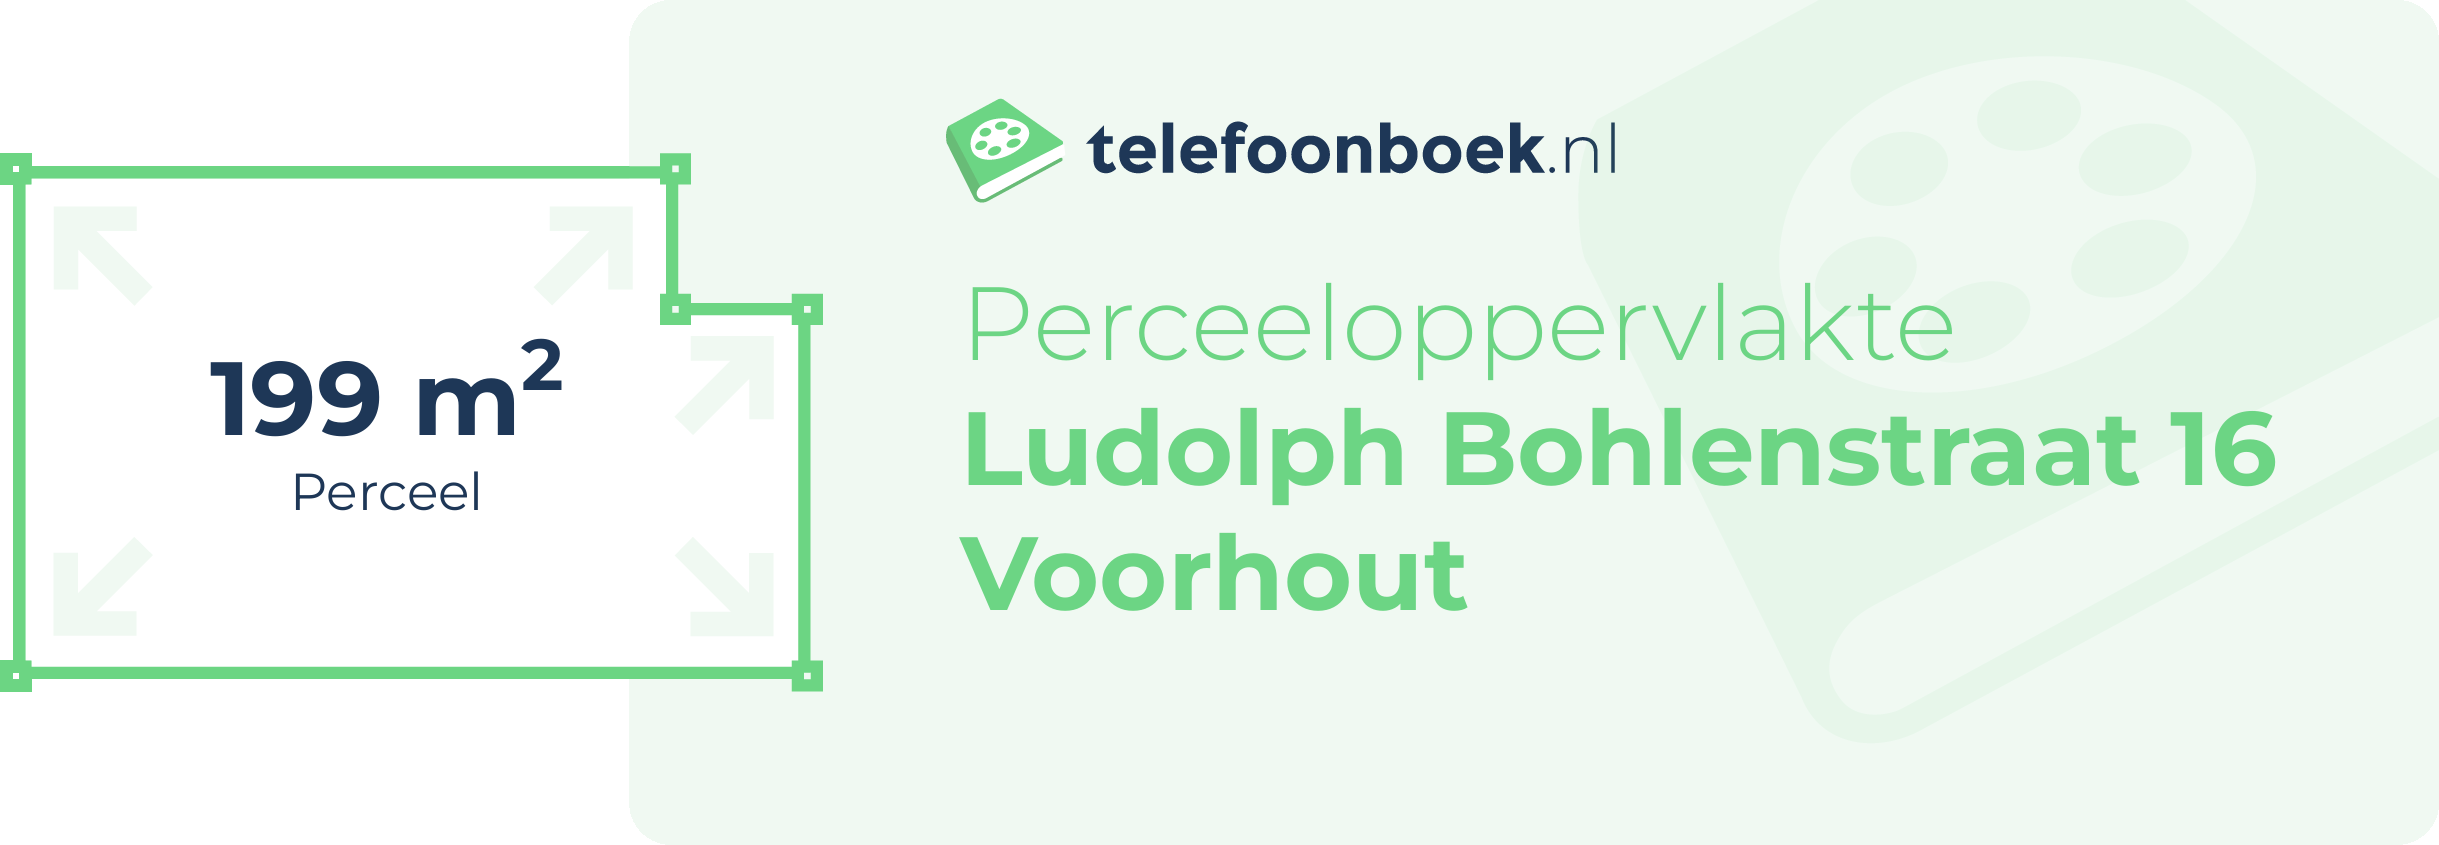 Perceeloppervlakte Ludolph Bohlenstraat 16 Voorhout